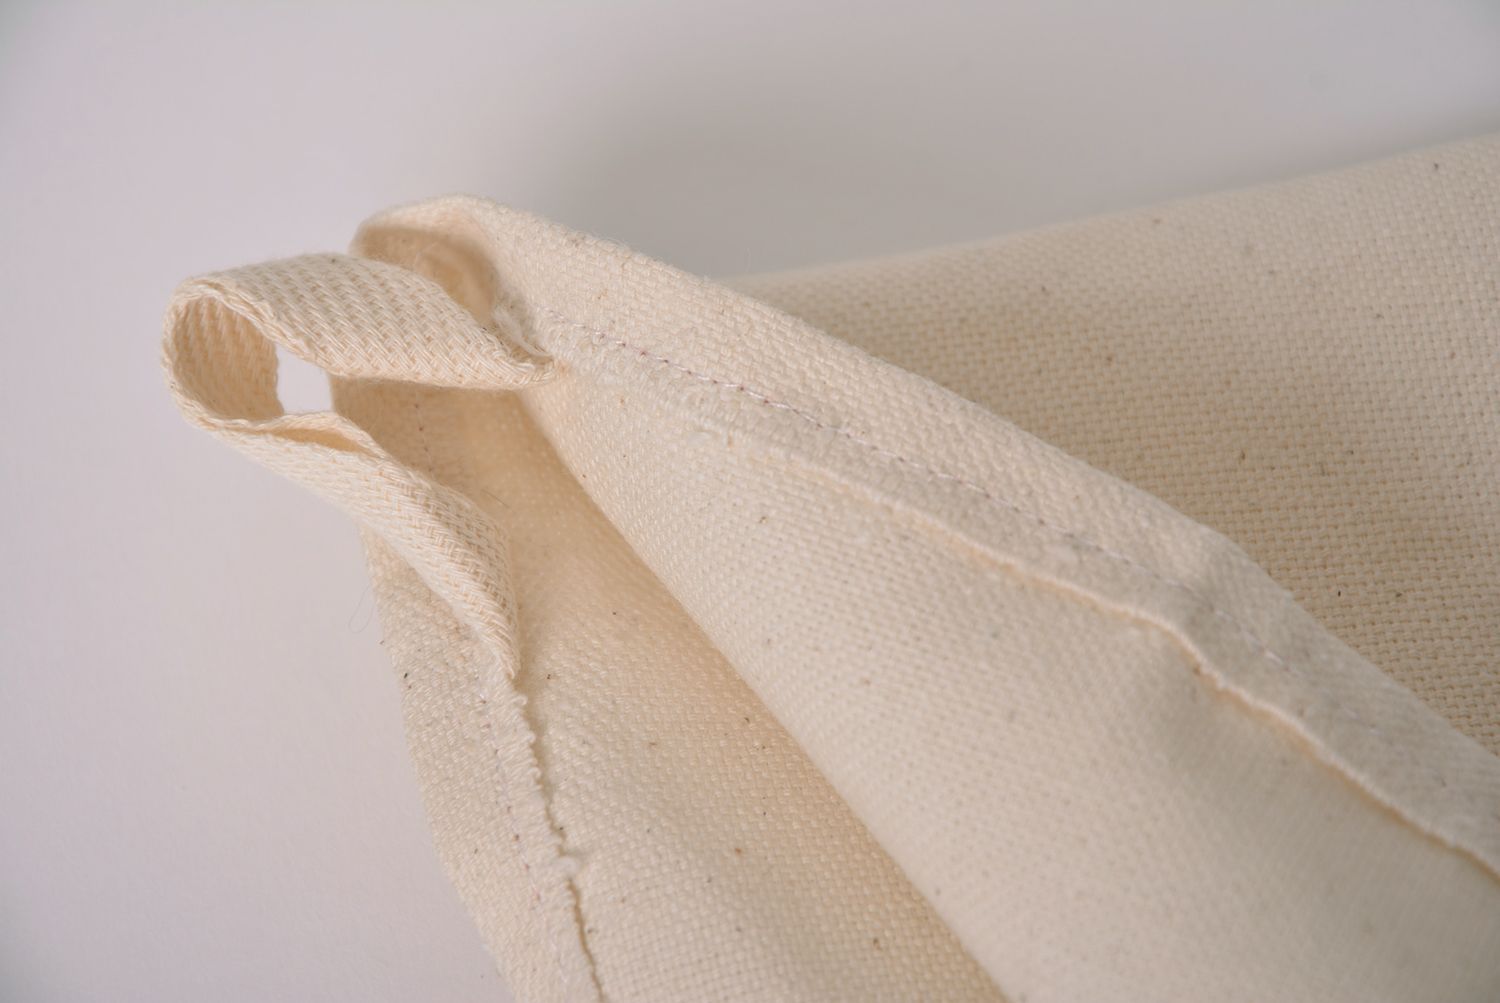 Asciugamano da cucina originale fatto a mano di stoffa naturale ragazza foto 5